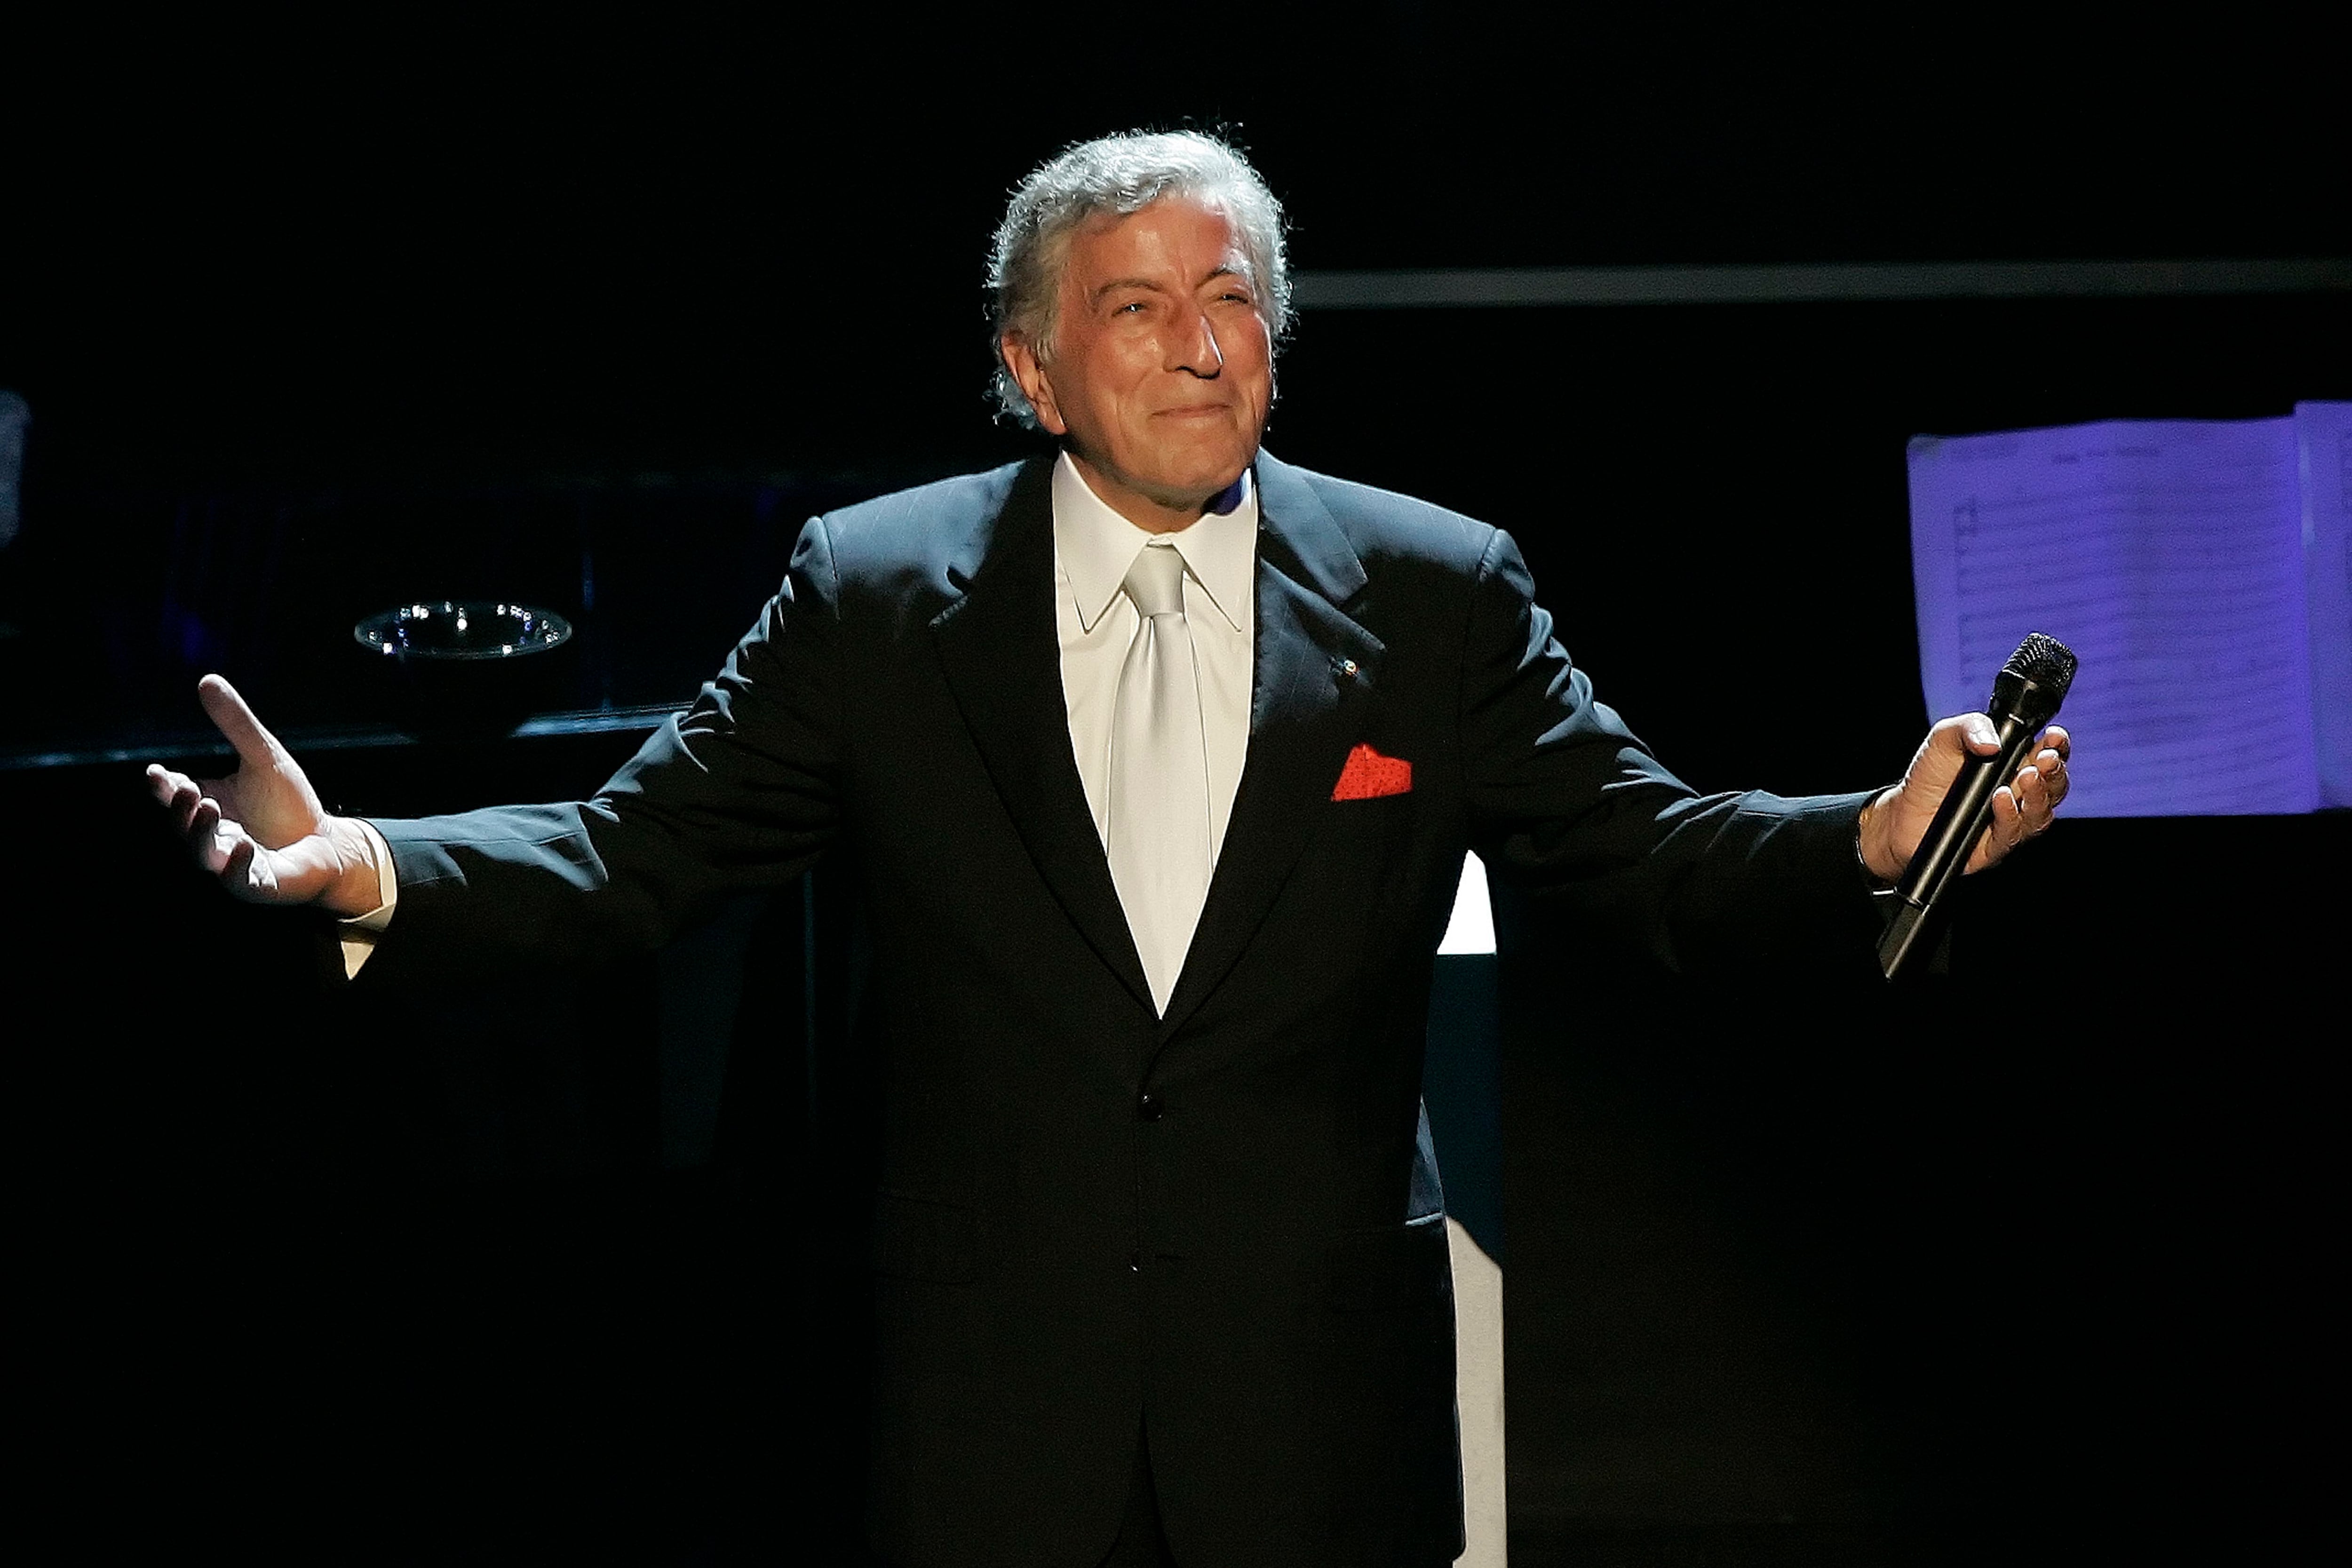 Tony Bennett agradece os aplausos depois de cantar "I left My Heart in San Francisco" na comemoração de seu 80º aniversário no teatro Kodak em Los Angeles, em 9 de novembro de 2006. (AP Photo/Kevork Djansezian, Arquivo)